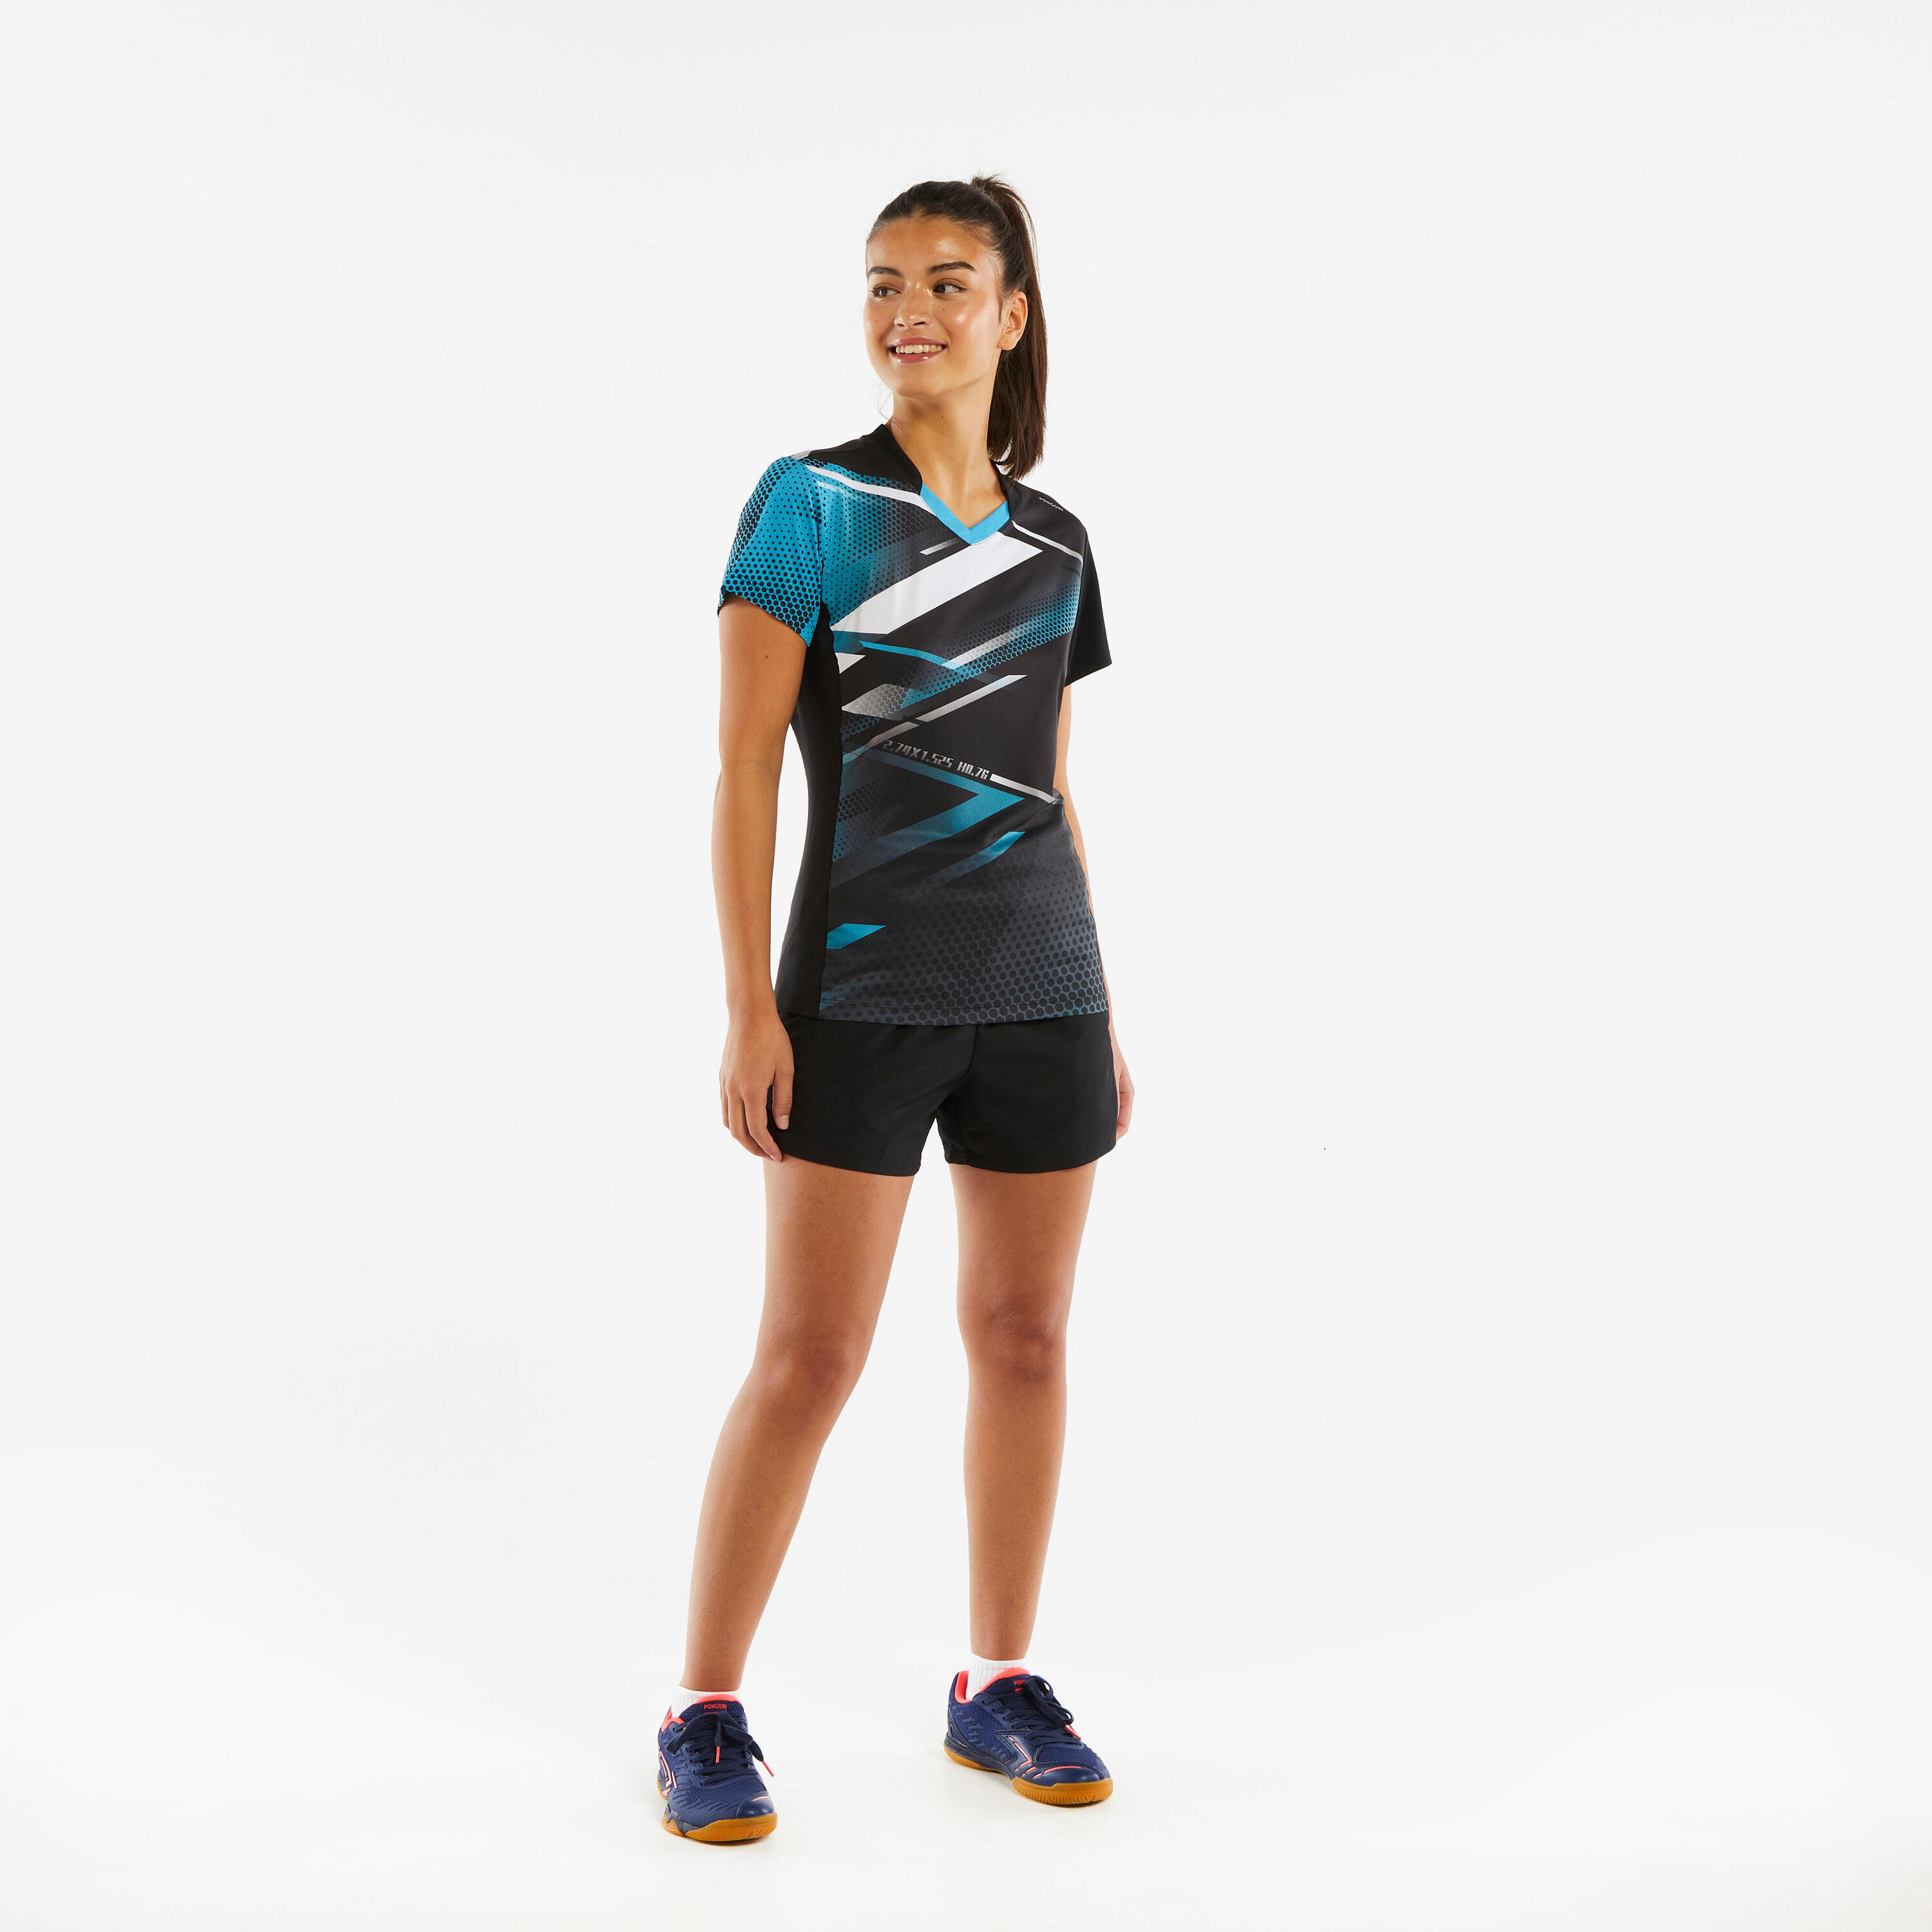 Women's Table Tennis T-Shirt TTP560 - Black/Blue 2/6